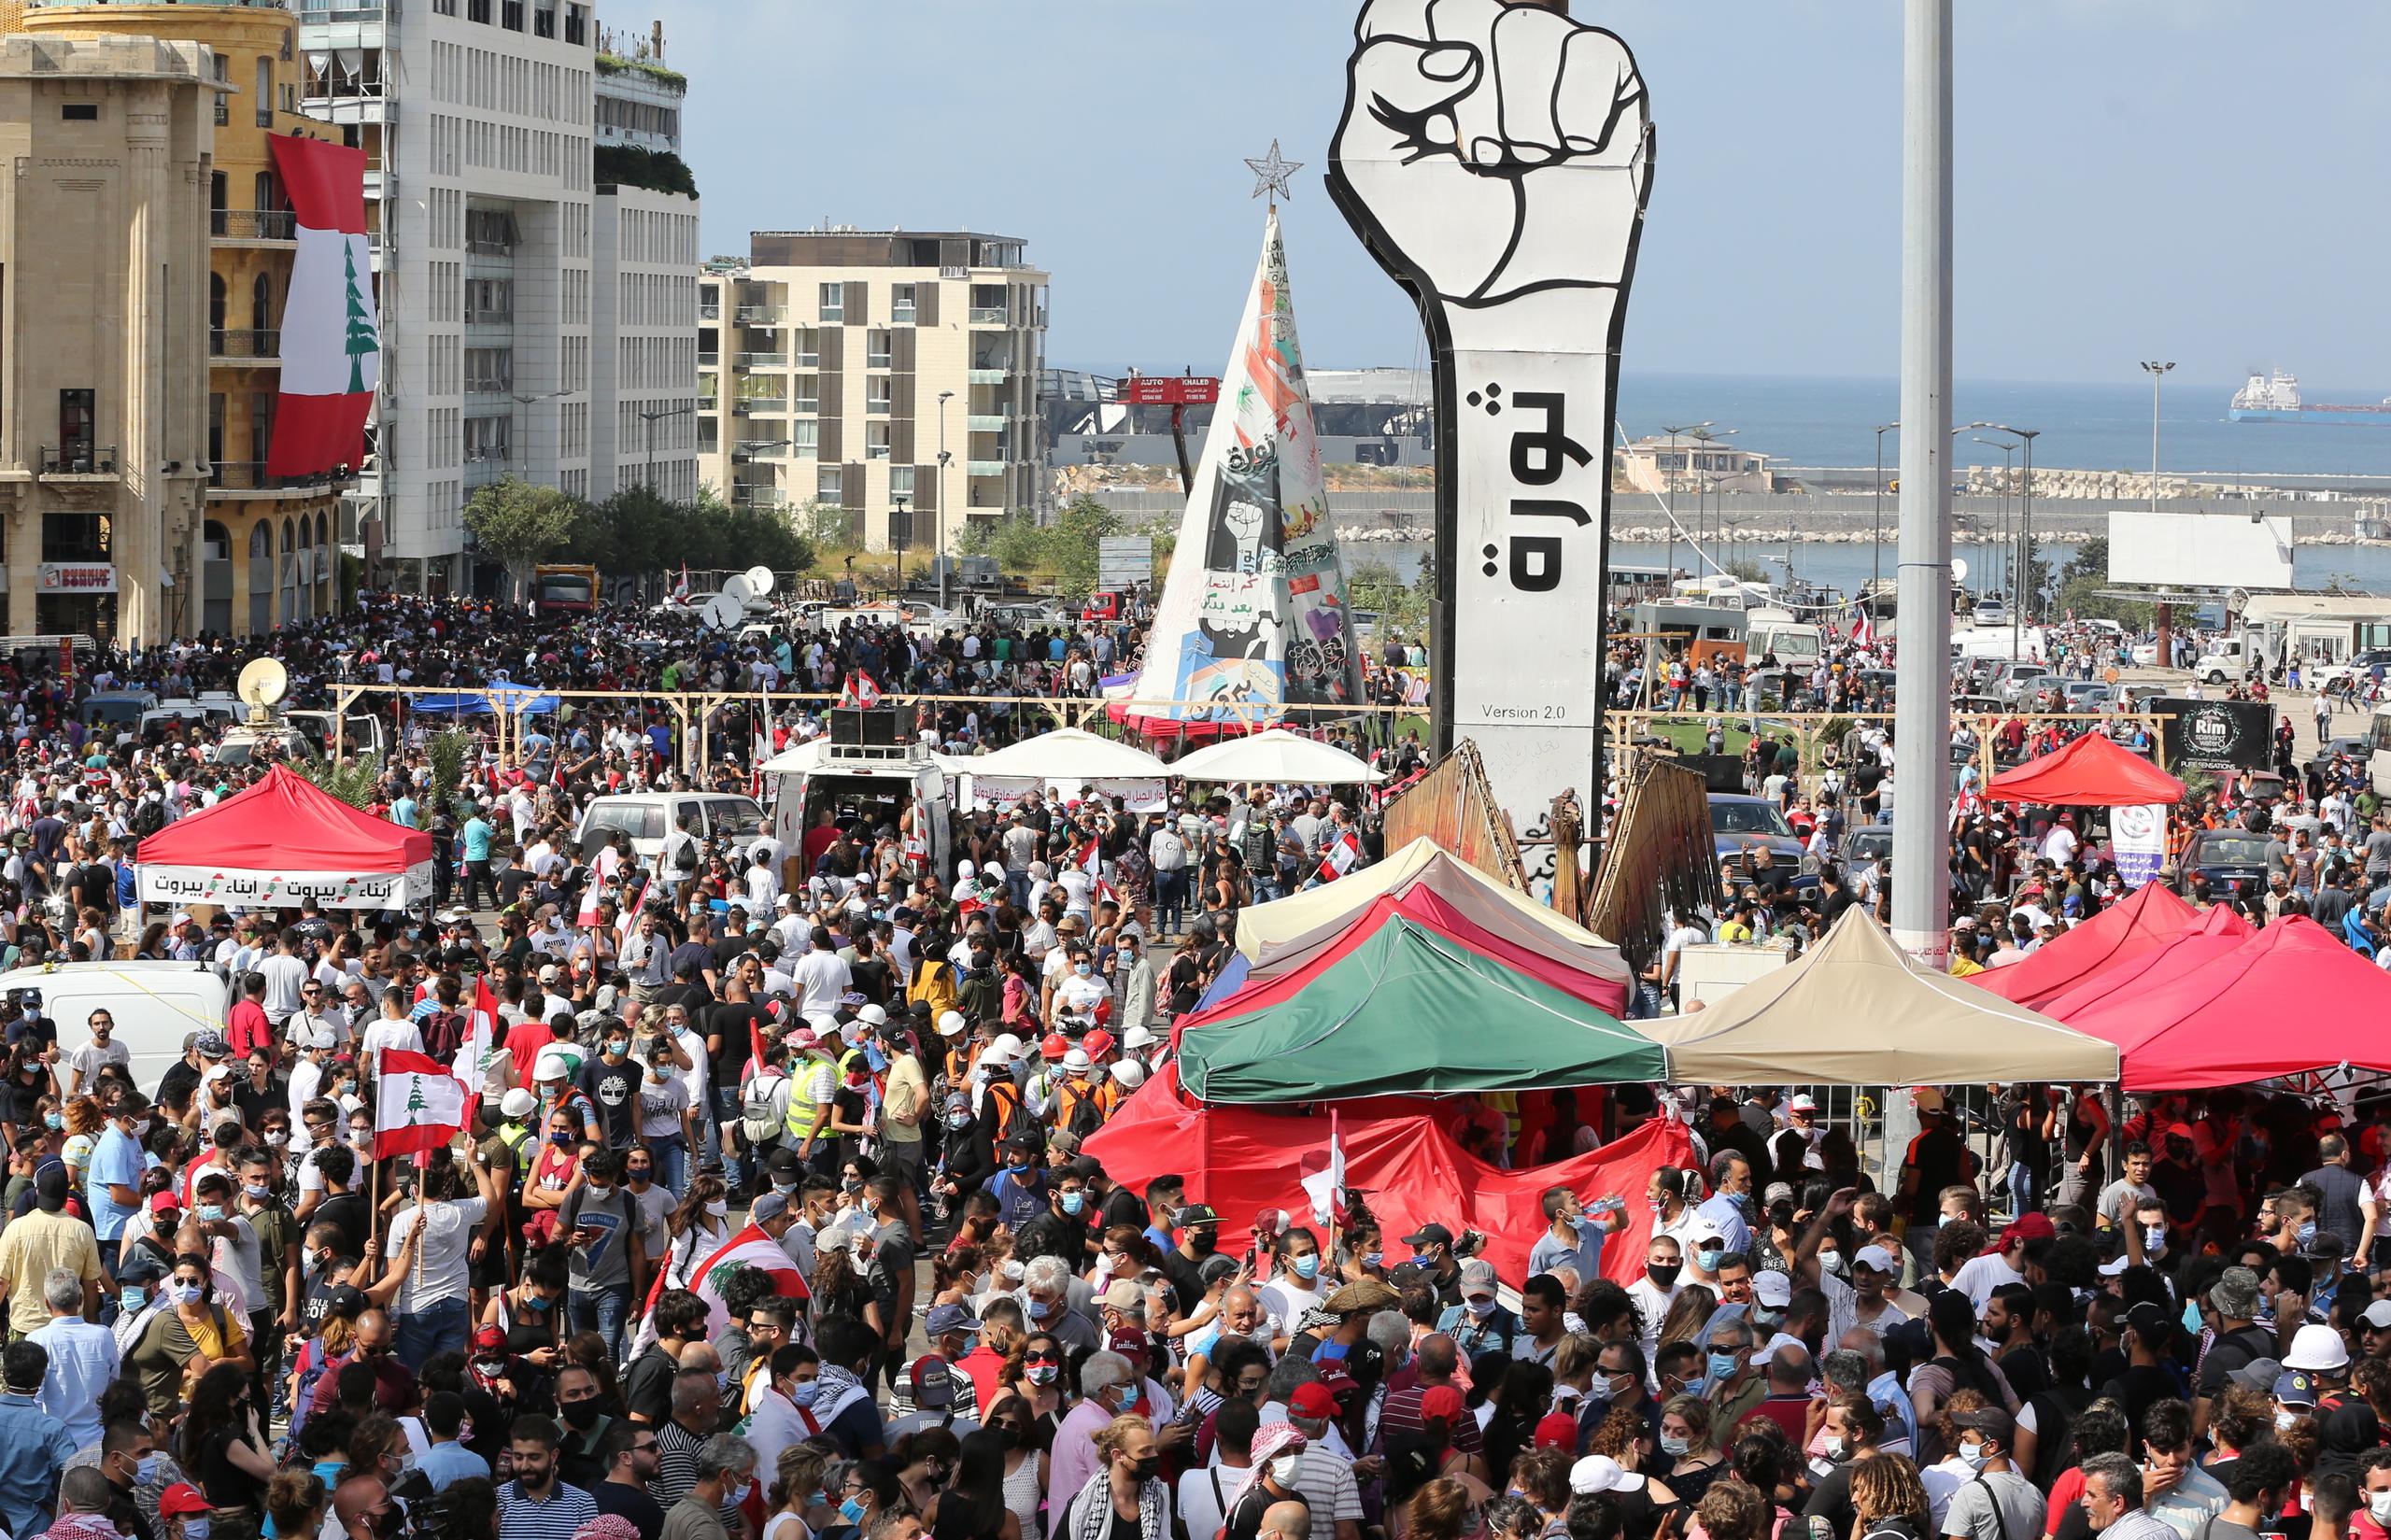 El evento reúne a cientos de personas en la simbólica Plaza de los Mártires y, al grito de “Dimisión”, un grupo intentó entrar en el Parlamento a la fuerza.